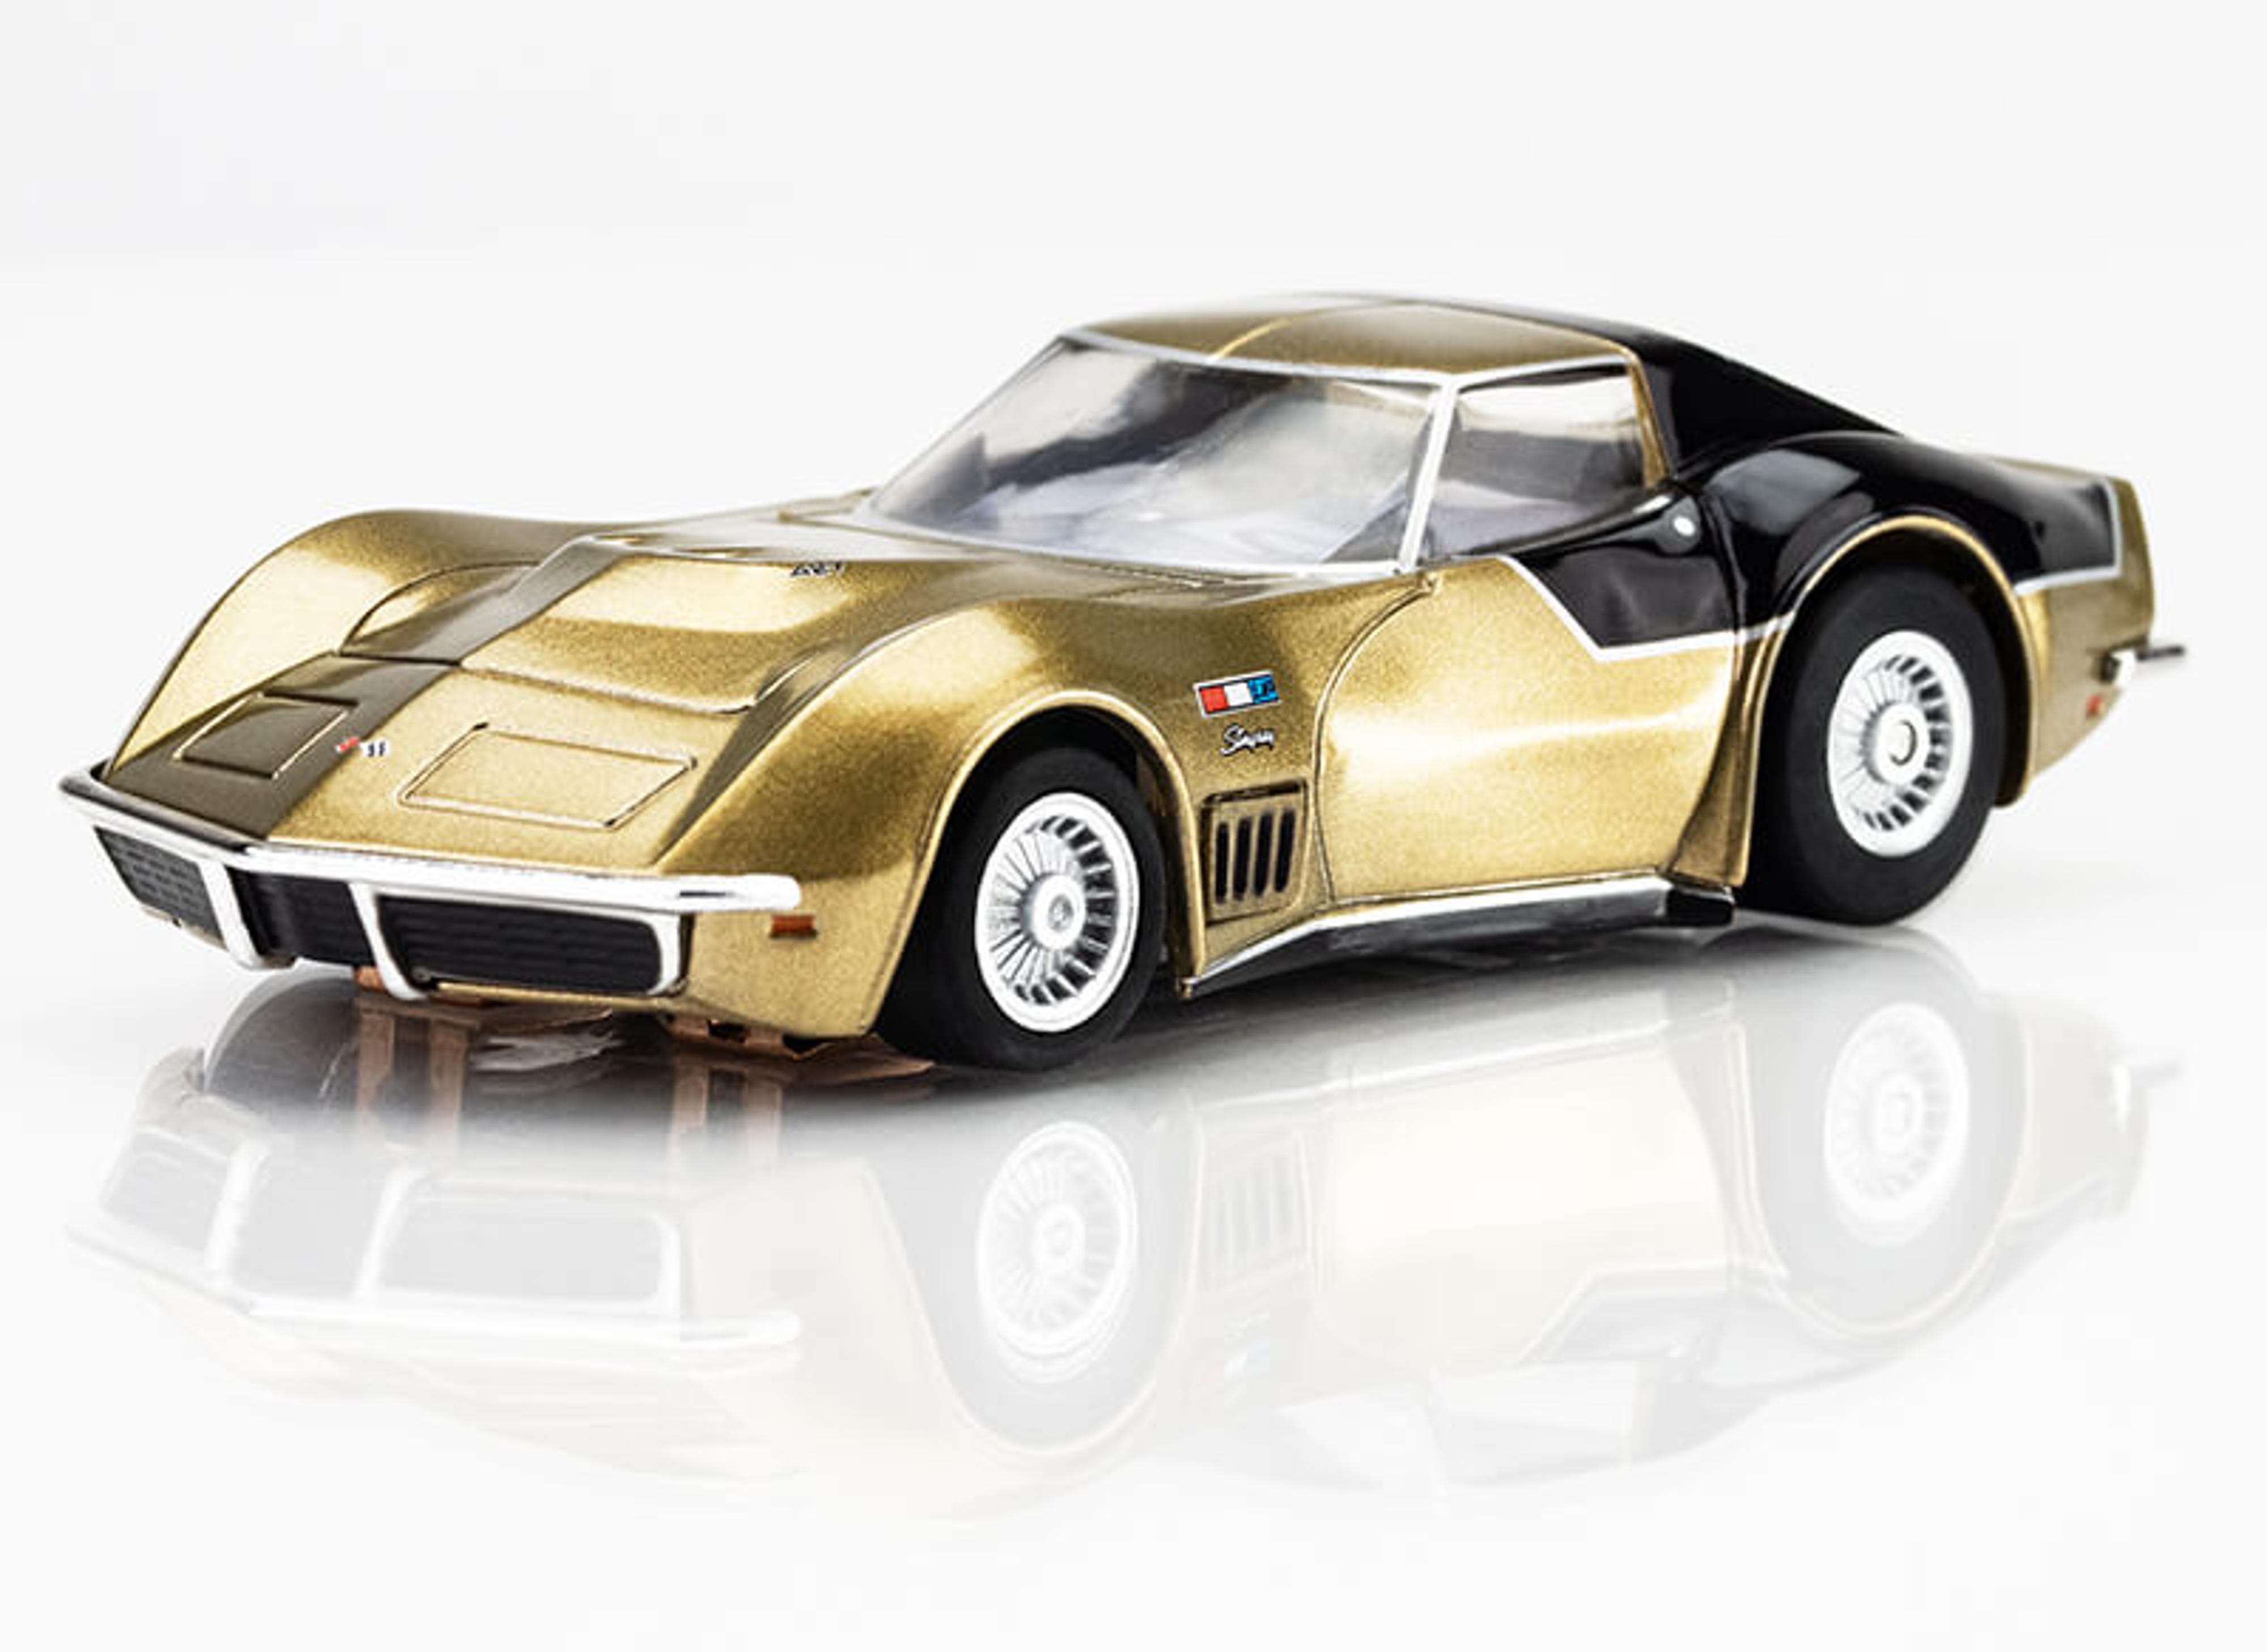 1969 Astrovette LMP 12 Gold/Black Limited Ed. Slot Car